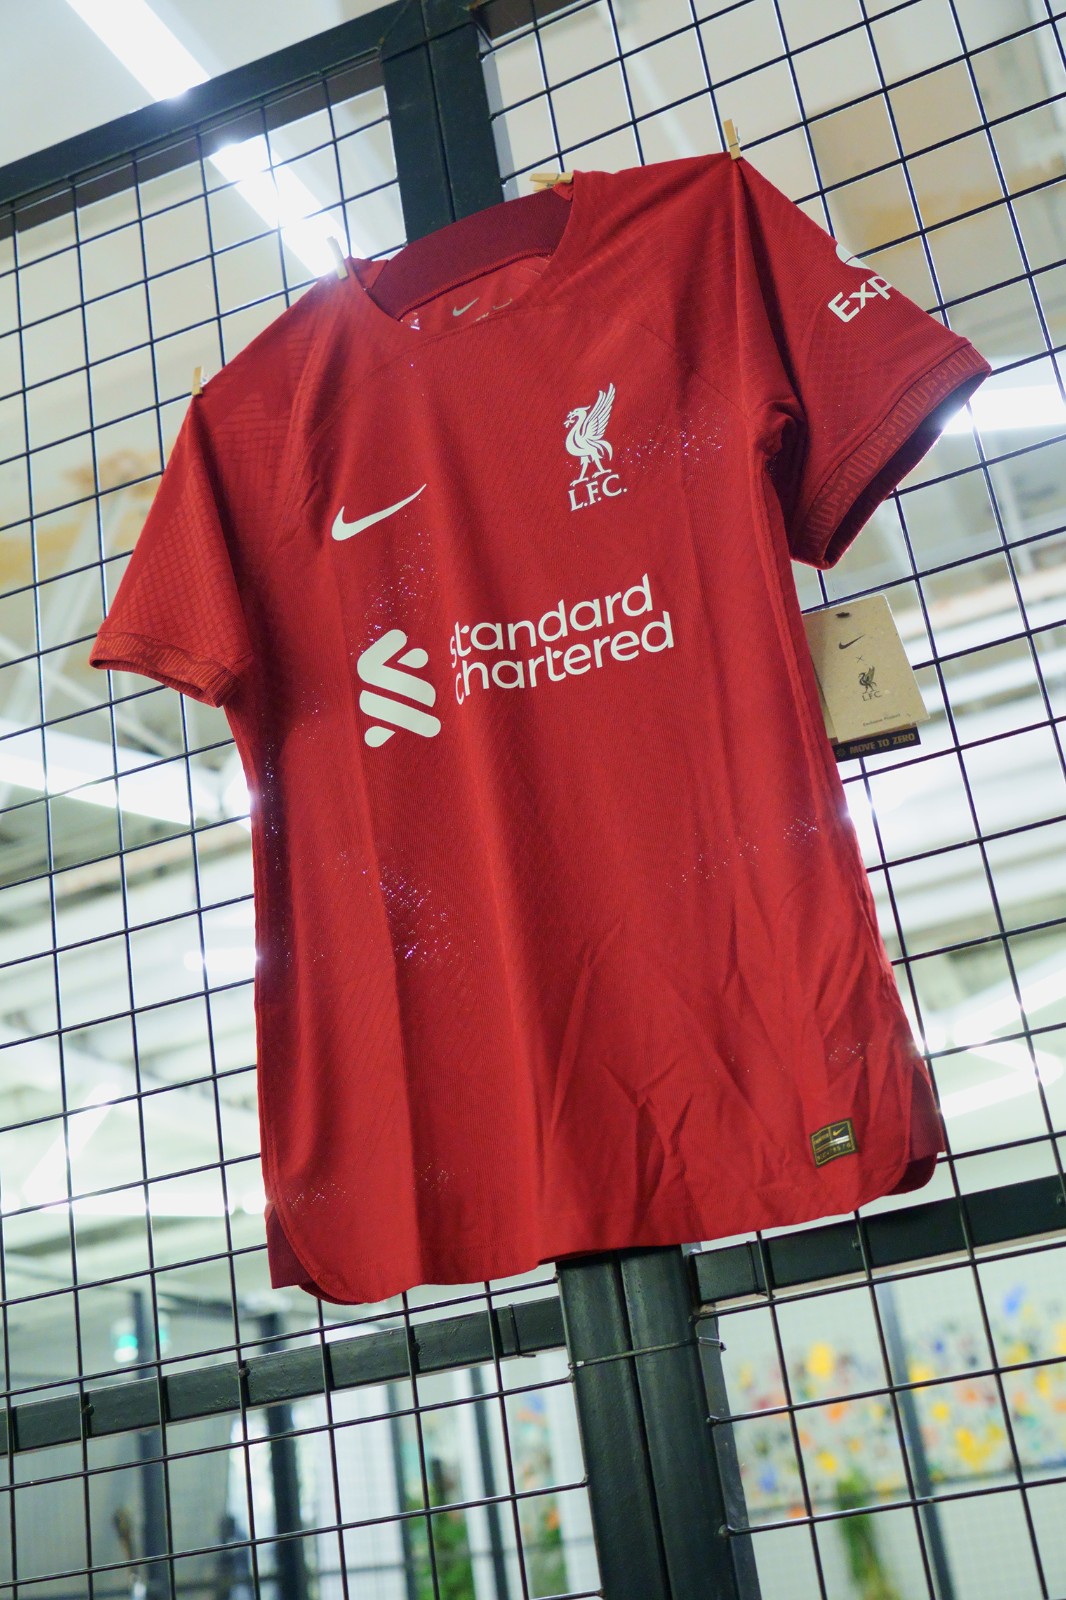 利物浦球衣购买 利物浦在华推出廉价球衣与假货竞争